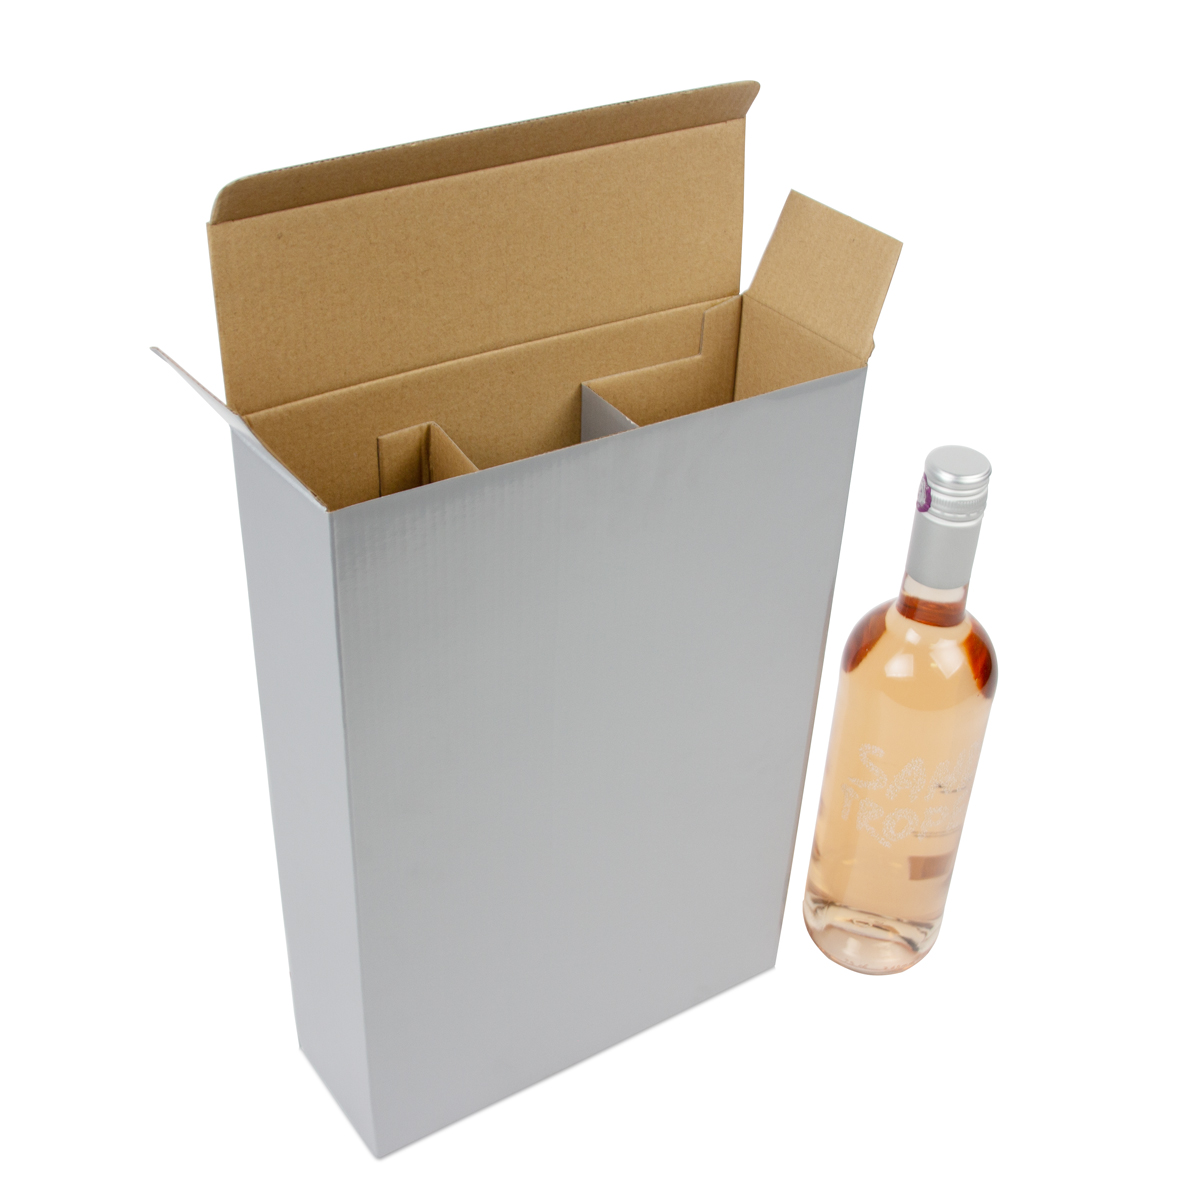 Weinflaschenboxen aus Pappe